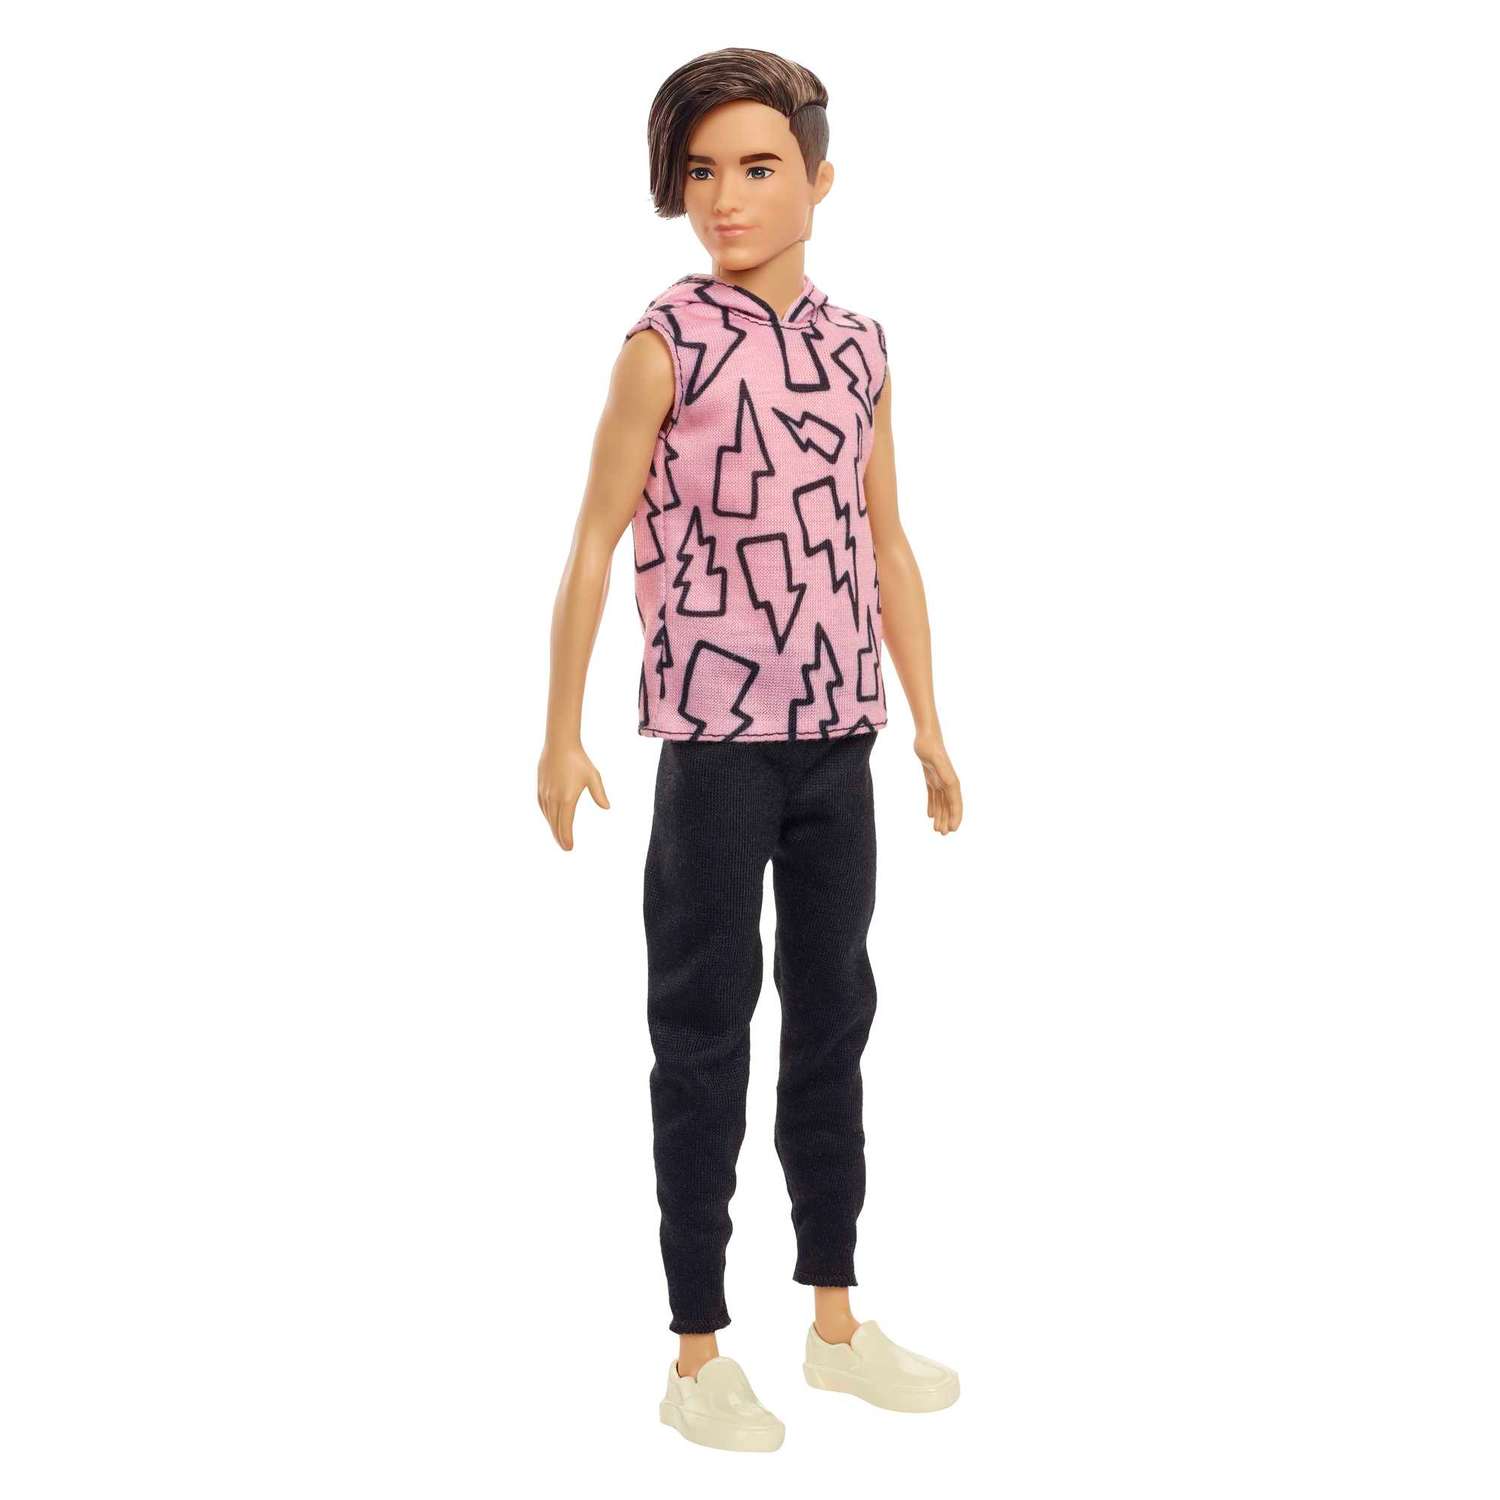 Кукла Barbie Кен DWK44 в ассортименте DWK44 - фото 18